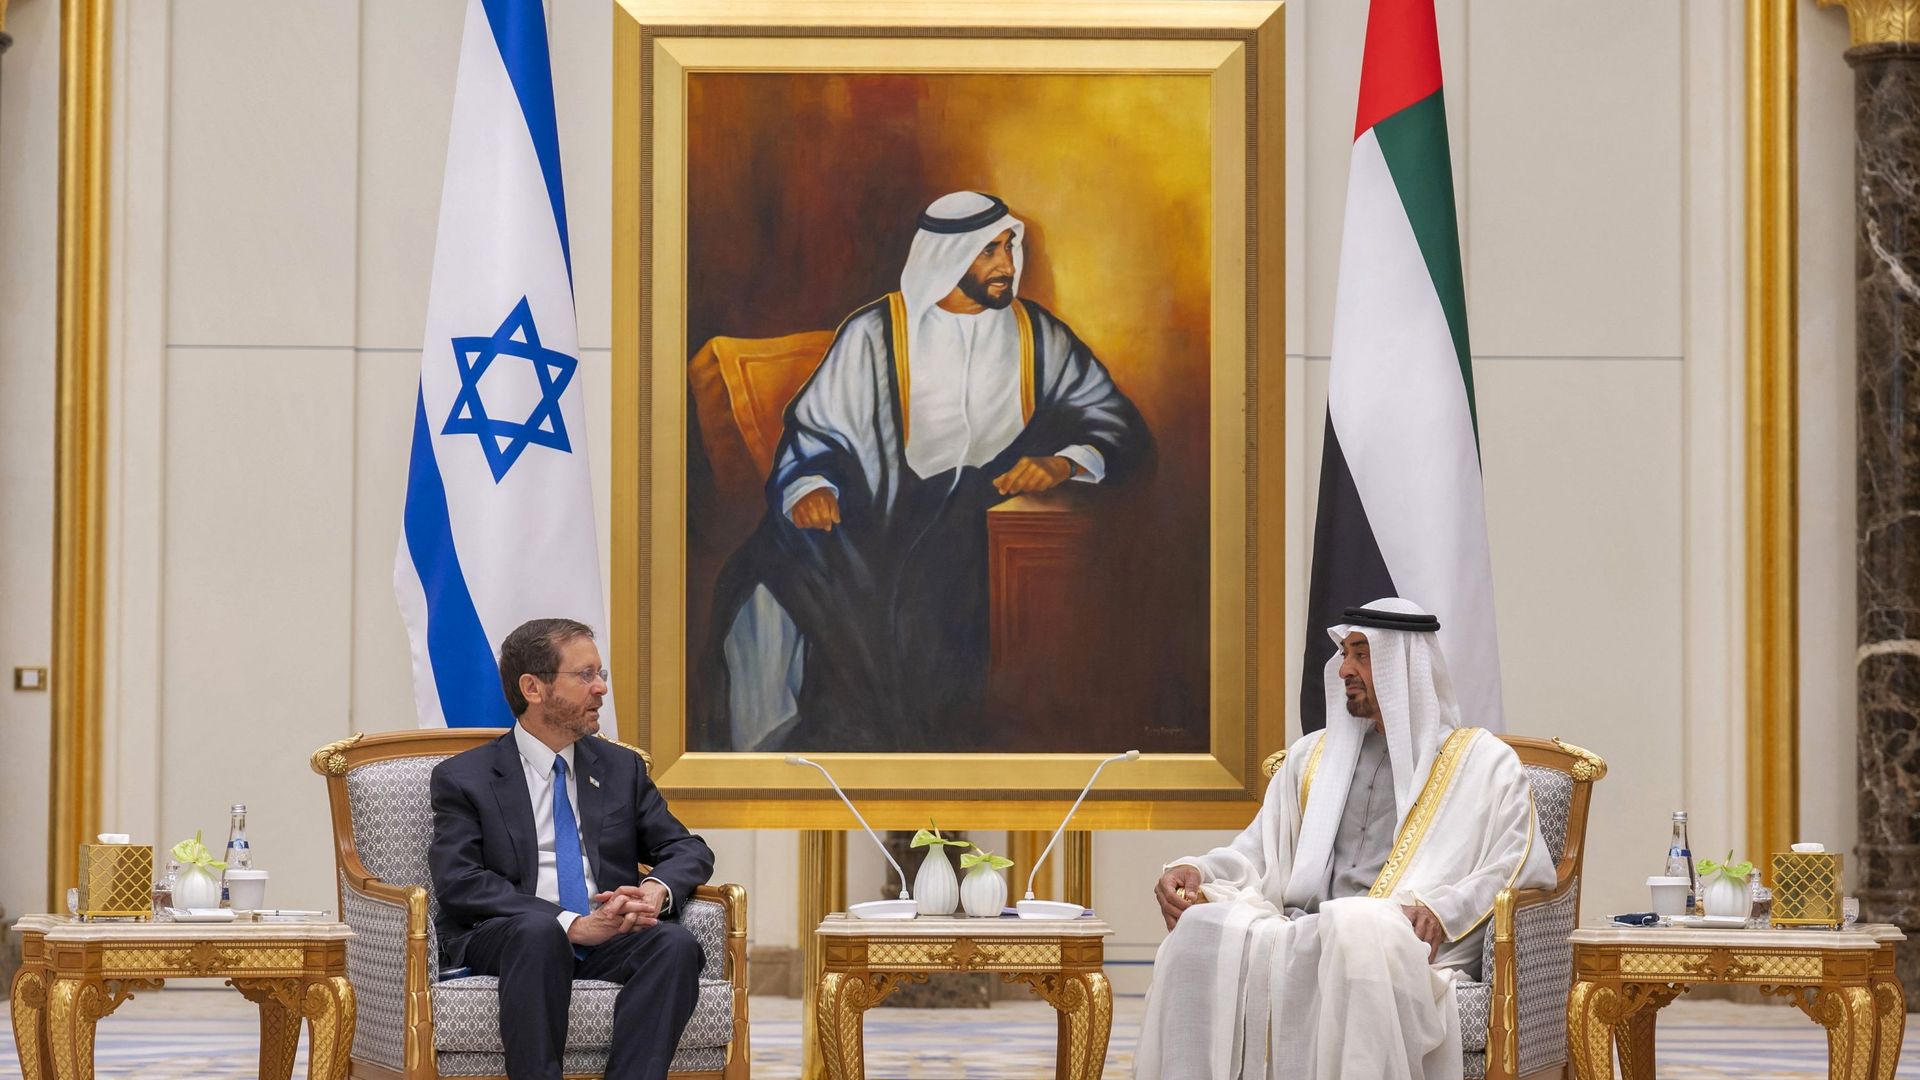 Le prince héritier d'Abu Dhabi, le cheikh Mohammed bin Zayed al-Nahyan (Droite), reçoit le président israélien Isaac Herzog (Gauche) lors d'une réception officielle à Qasr al-Watan dans la capitale des Émirats arabes unis, Abu Dhabi, le 30 janvier 2022.